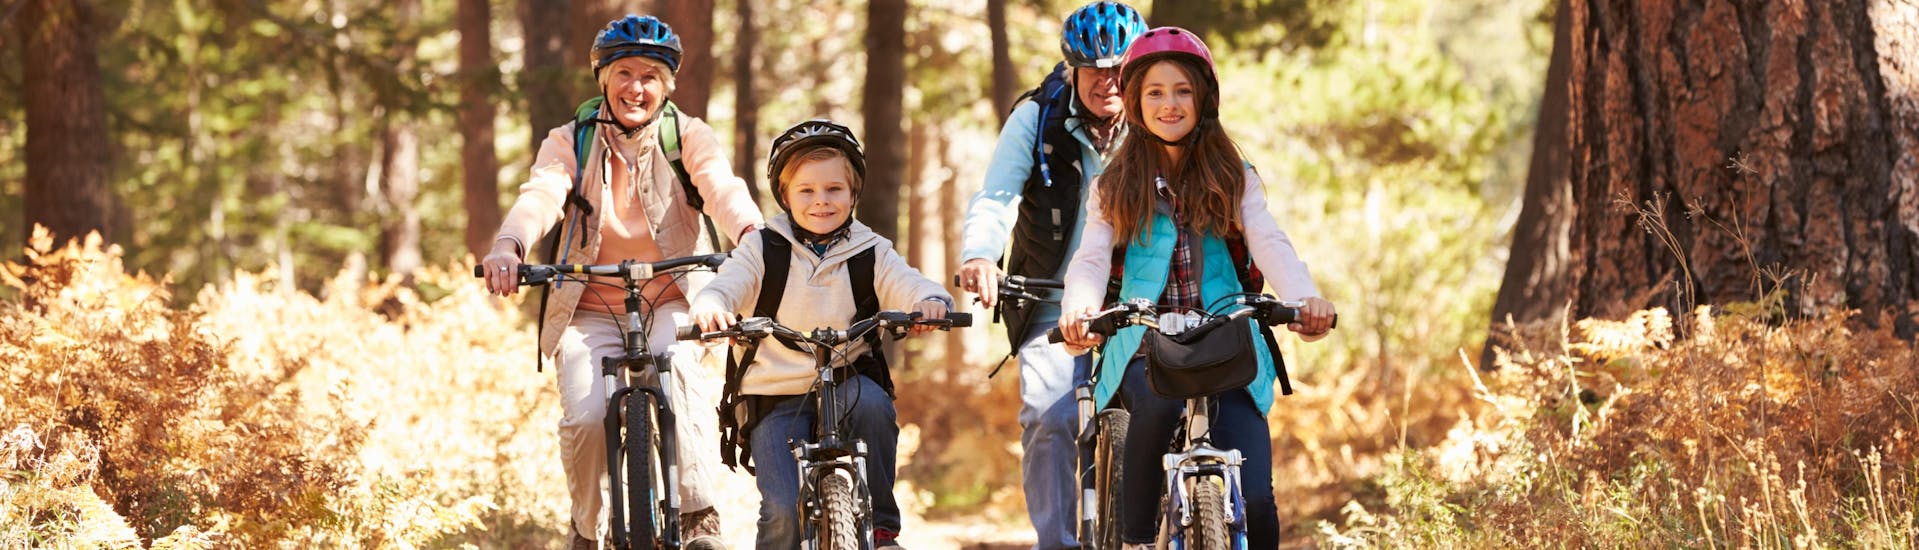 Eine Familie fährt mit geliehenen Fahrrädern des örtlichen Fahrradverleihs durch den Wald.